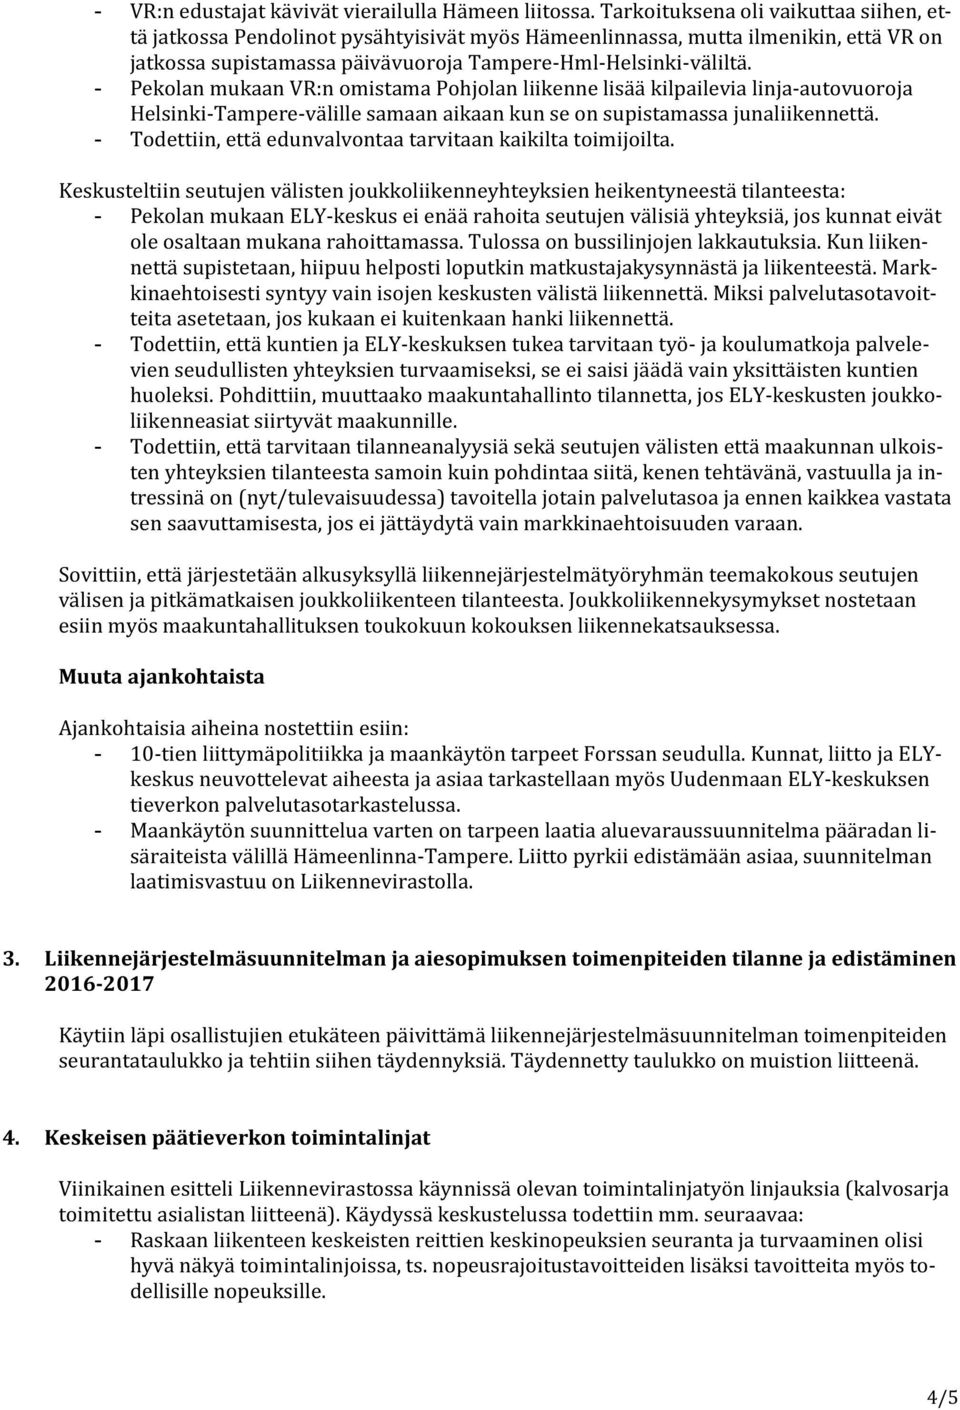 - Pekolan mukaan VR:n omistama Pohjolan liikenne lisää kilpailevia linja-autovuoroja Helsinki-Tampere-välille samaan aikaan kun se on supistamassa junaliikennettä.